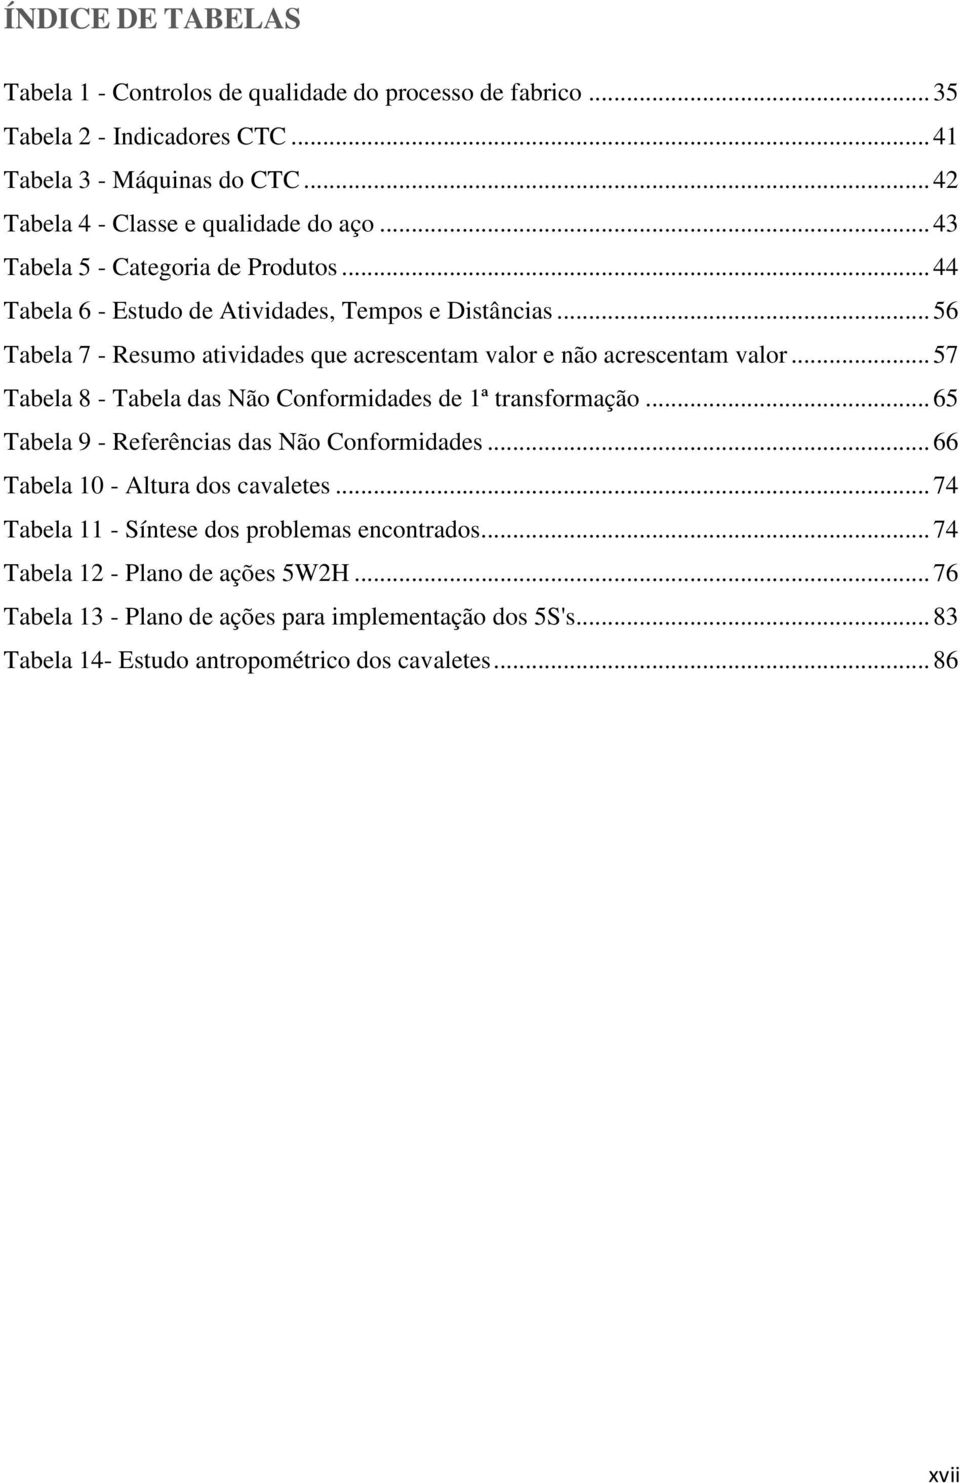 .. 57 Tabela 8 - Tabela das Não Conformidades de 1ª transformação... 65 Tabela 9 - Referências das Não Conformidades... 66 Tabela 10 - Altura dos cavaletes.